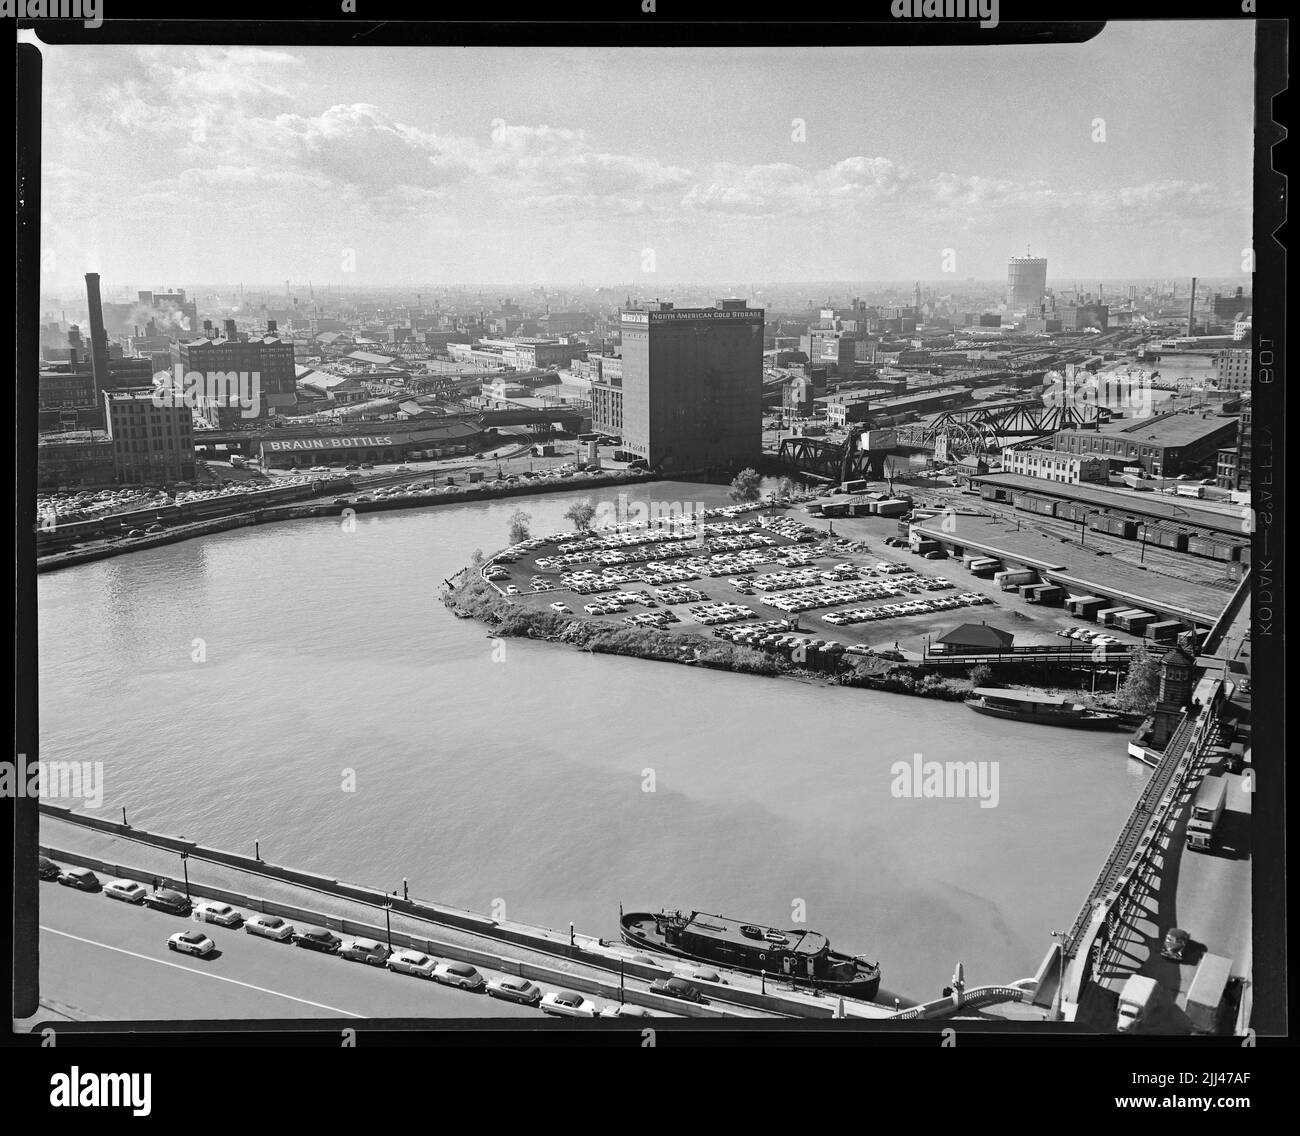 Wolf Point la confluenza dei rami nord, sud e principale del fiume Chicago, 1953. Immagine da 4x5 pollici negativo. Foto Stock